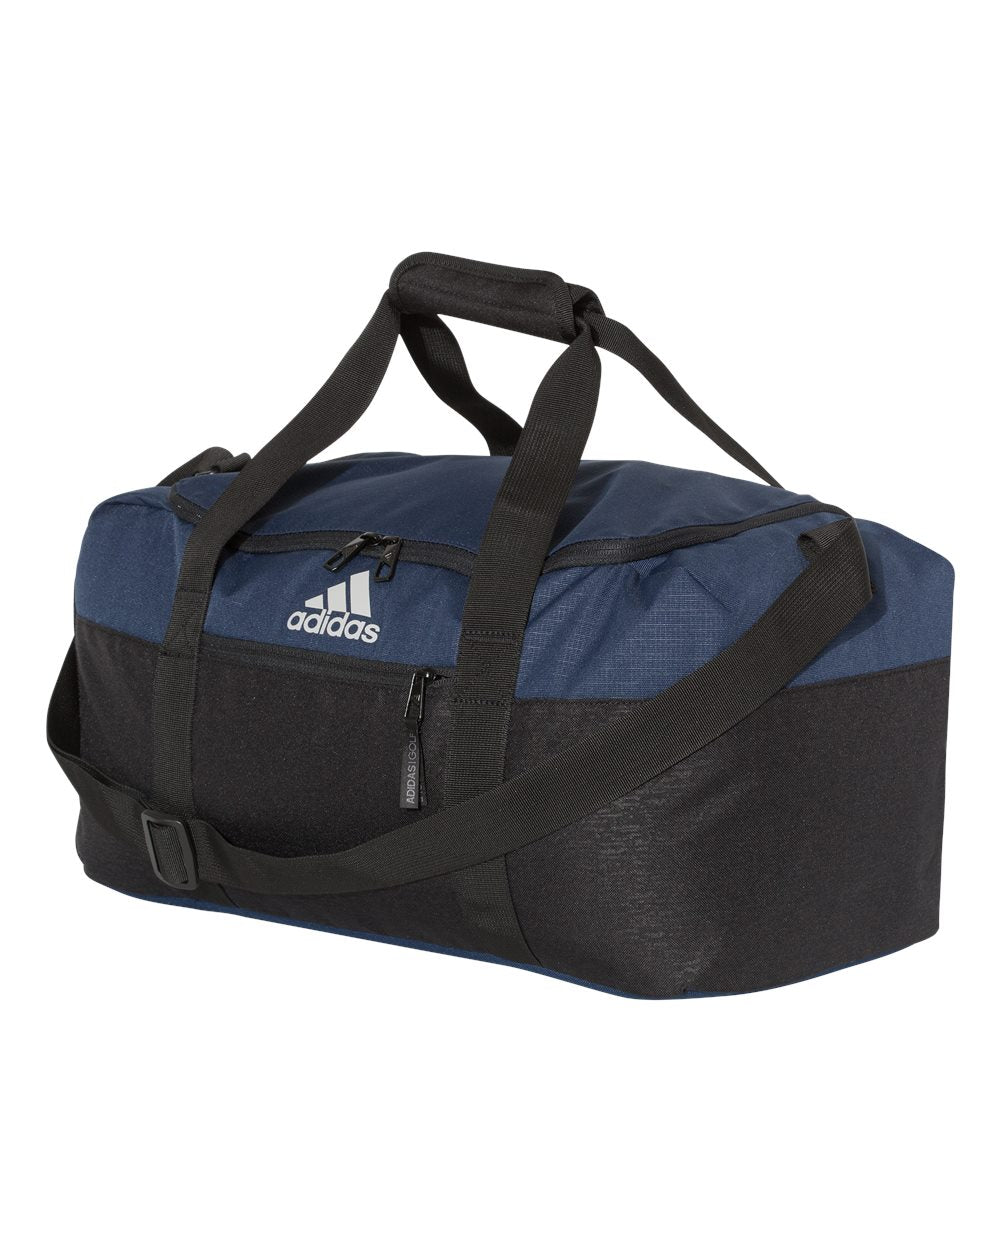 Buy collegiate-navy-black Adidas 35L Weekend Duffel Bag